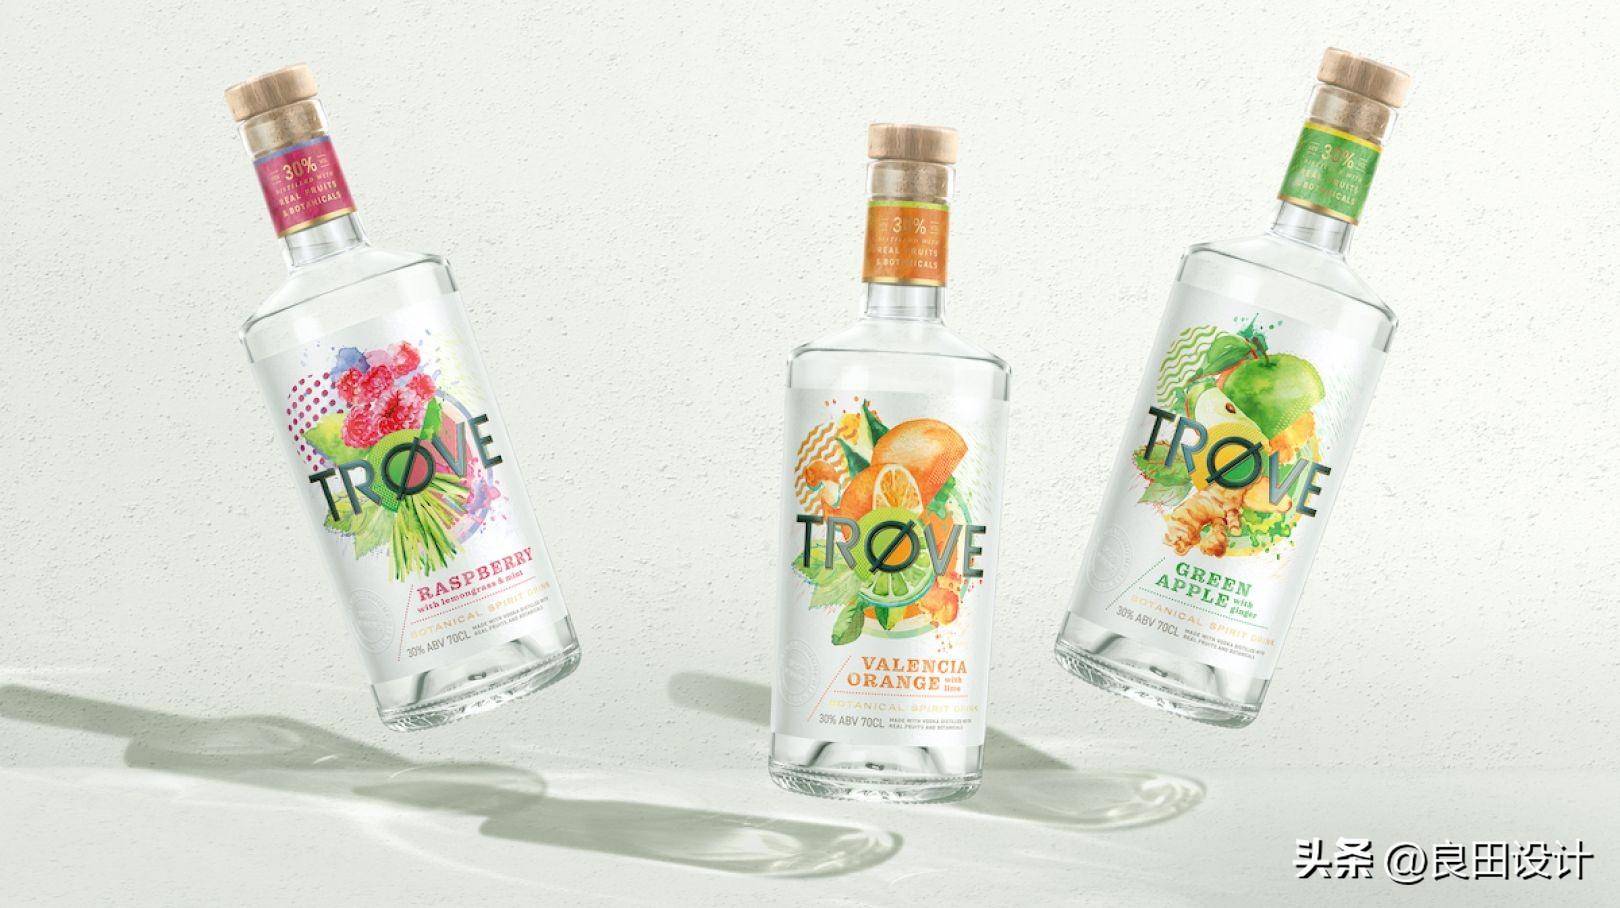 苹果主题插图手绘版:为新的低酒精、低热量烈酒品牌 TRØVE 创作的酒包装设计-第7张图片-太平洋在线下载